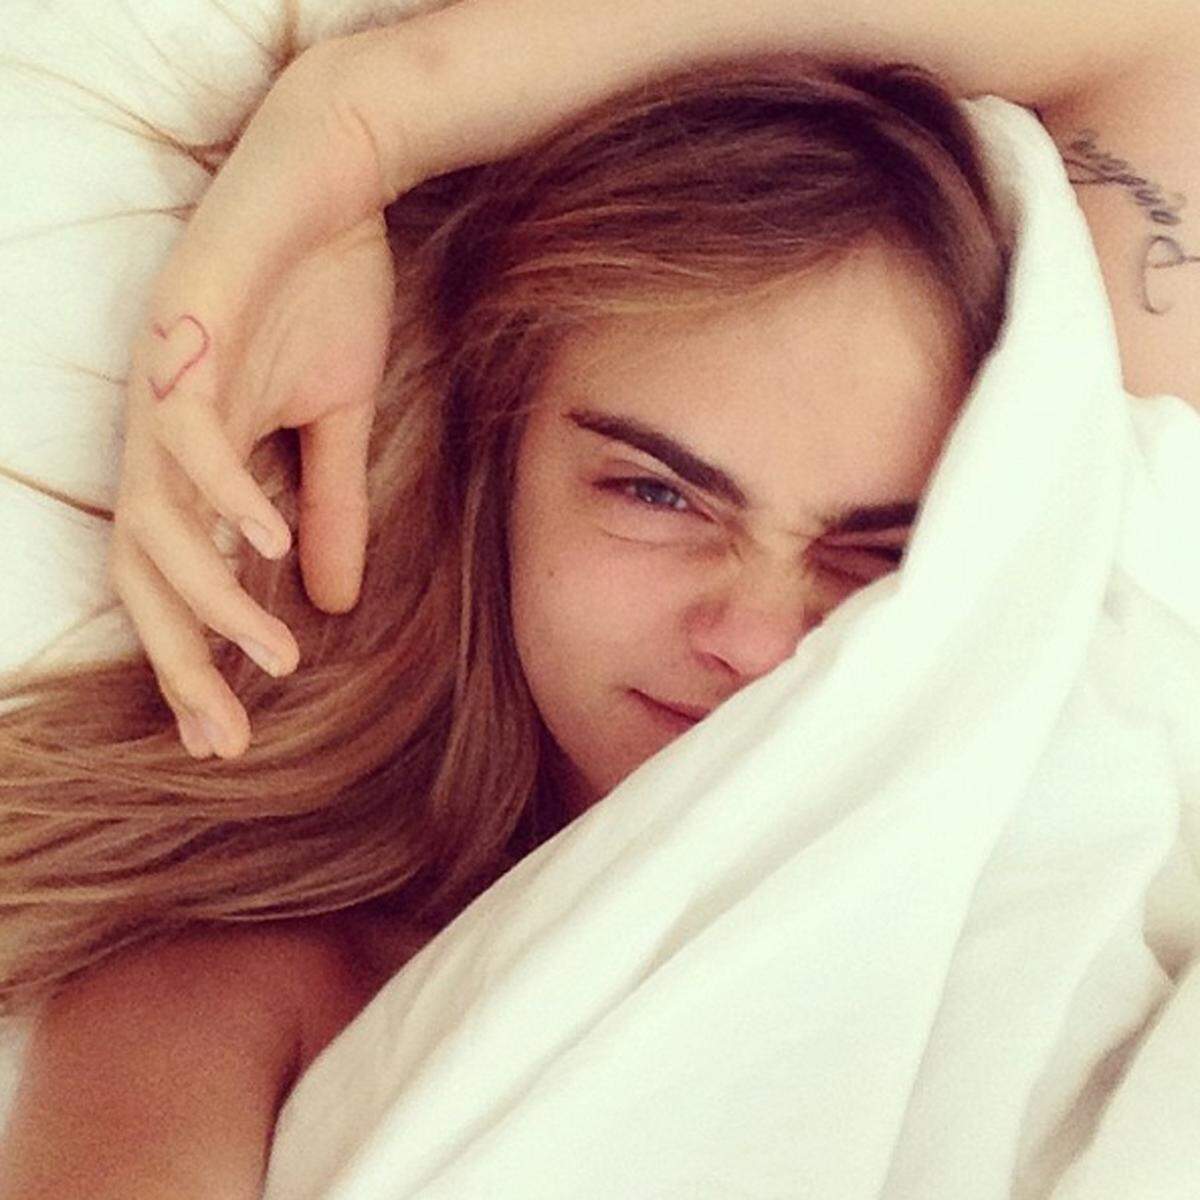 Auf Instagram zeigen sich Promis ja gerne von ihrer natürlichen und intimen Seite. Jetzt gleich noch mehr, immerhin sind #Bedstagrams, also Selfies im Bett, der neue Renner. Da macht natürlich auch Model Cara Delevingne mit, die sich ganz verschlafen gibt.